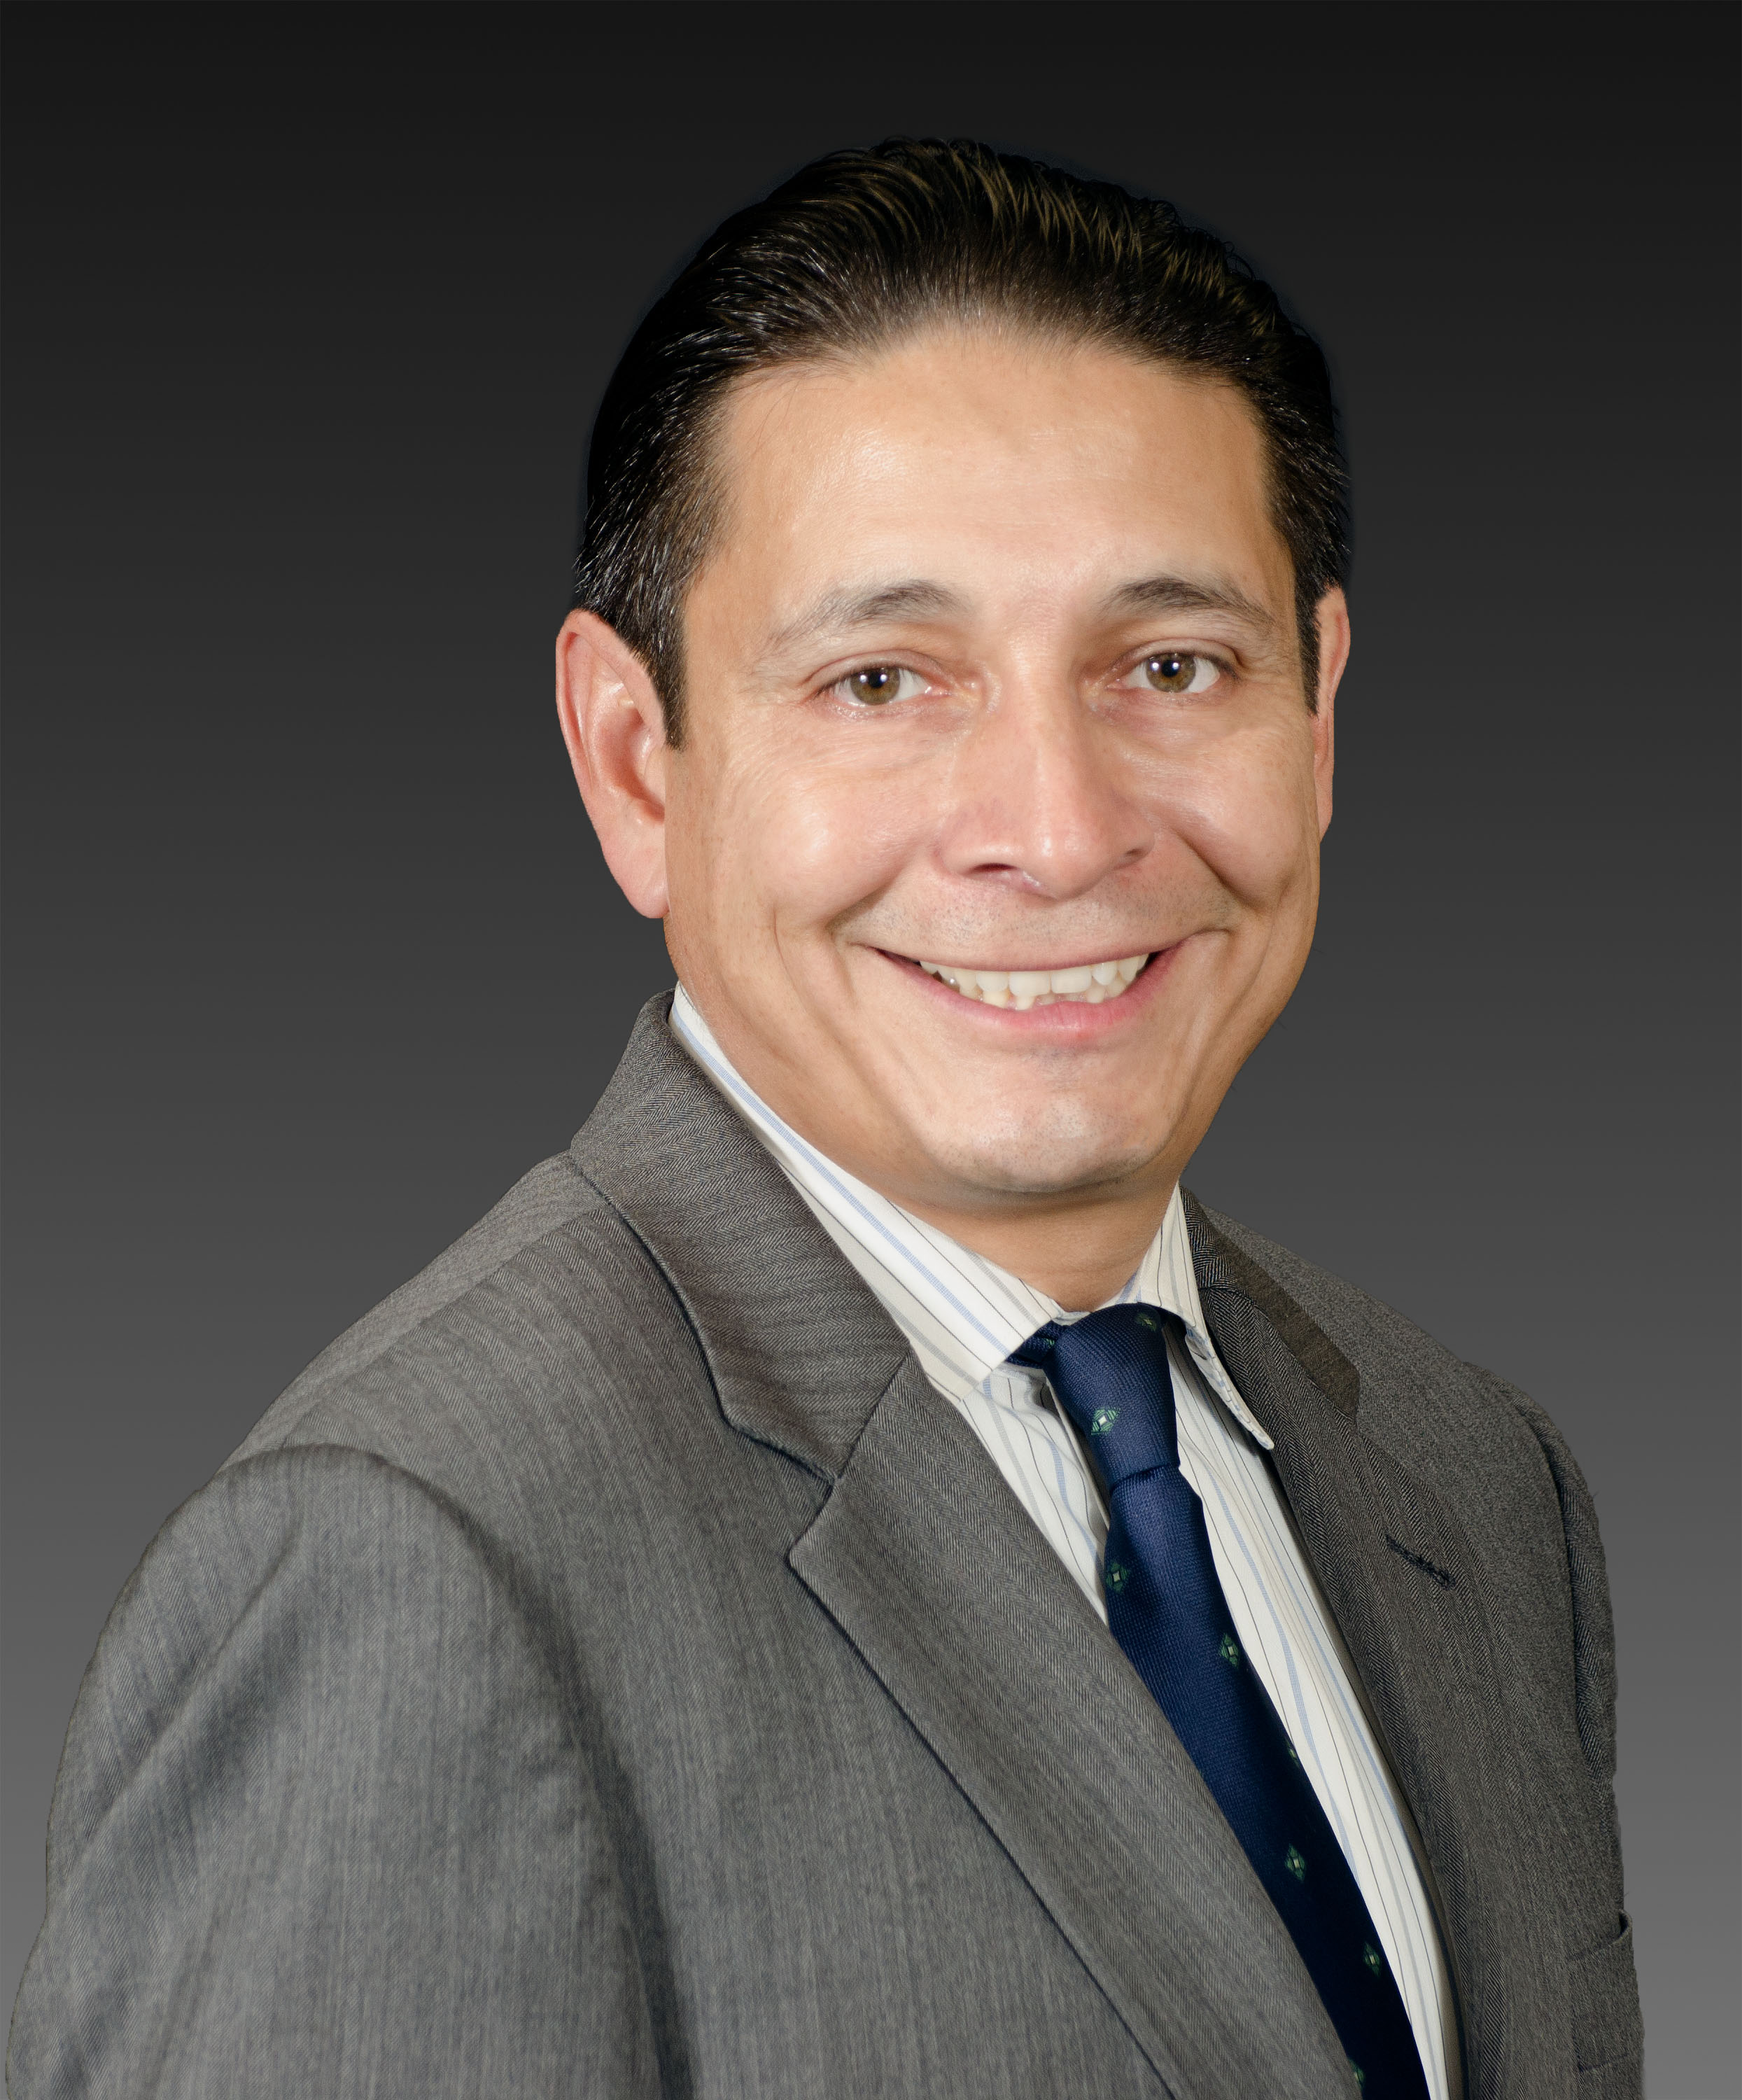 Gabriel Perez